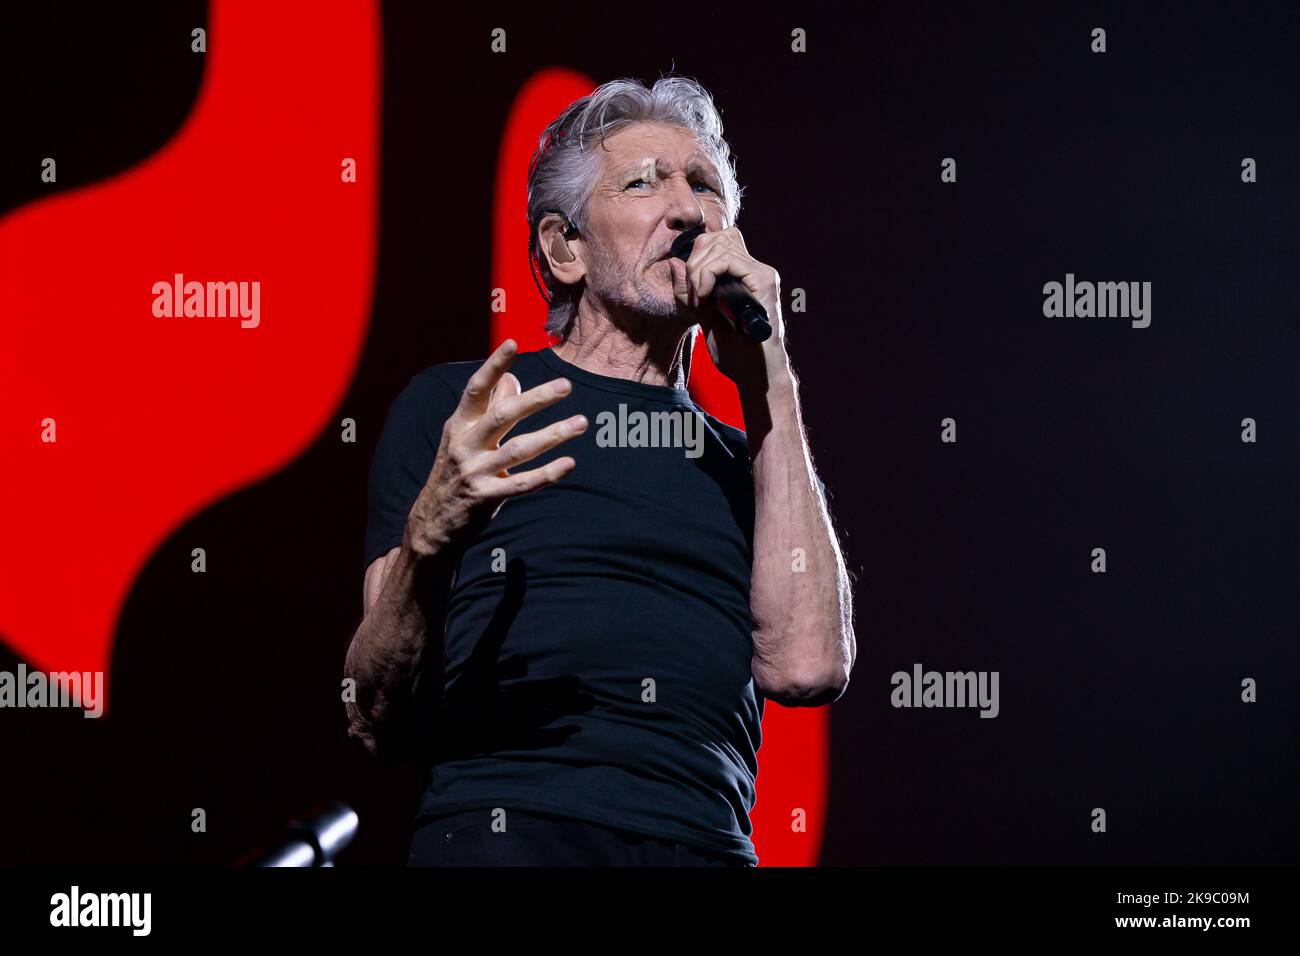 Le musicien Roger Waters de Pink Floyd se présentant à l'aréna Rogers à Vancouver, C.-B., Canada, on 15 septembre 2022 Banque D'Images